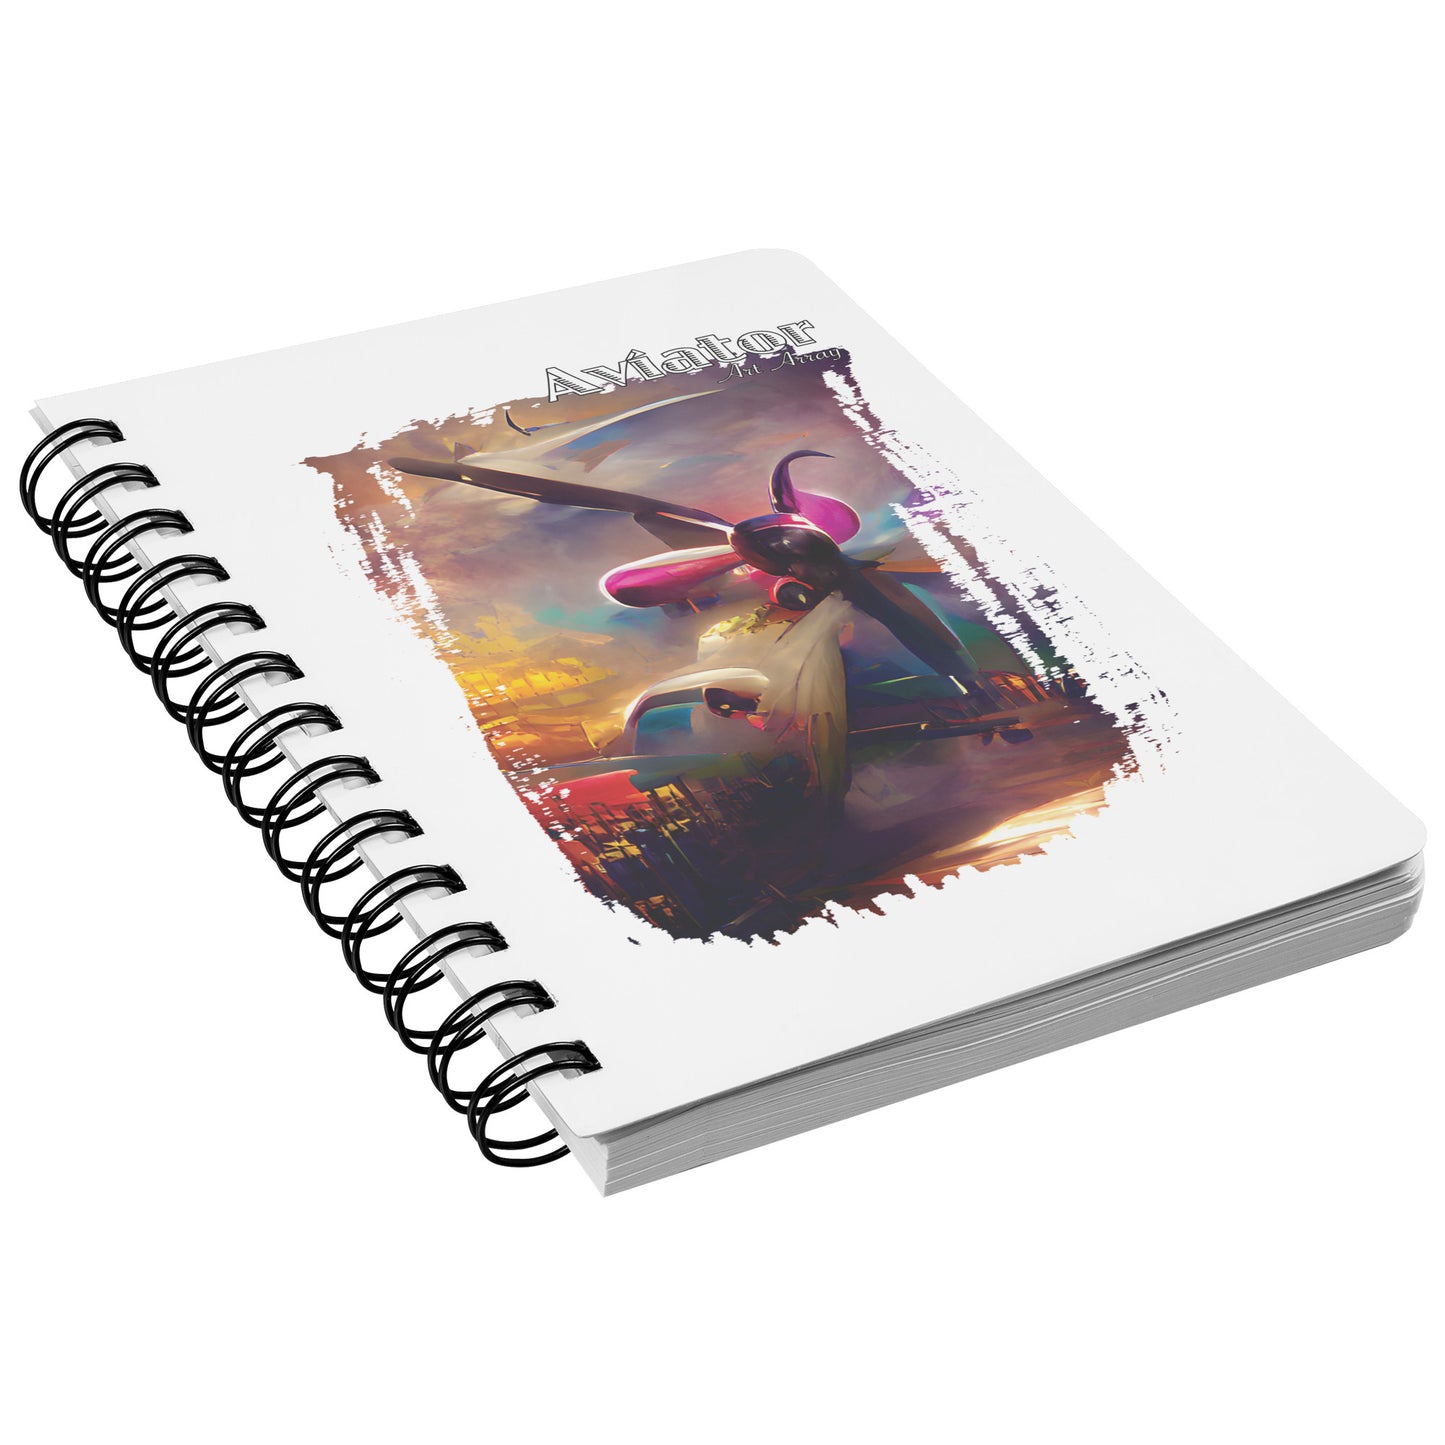 Aviator Art Array #2 spiral notebook